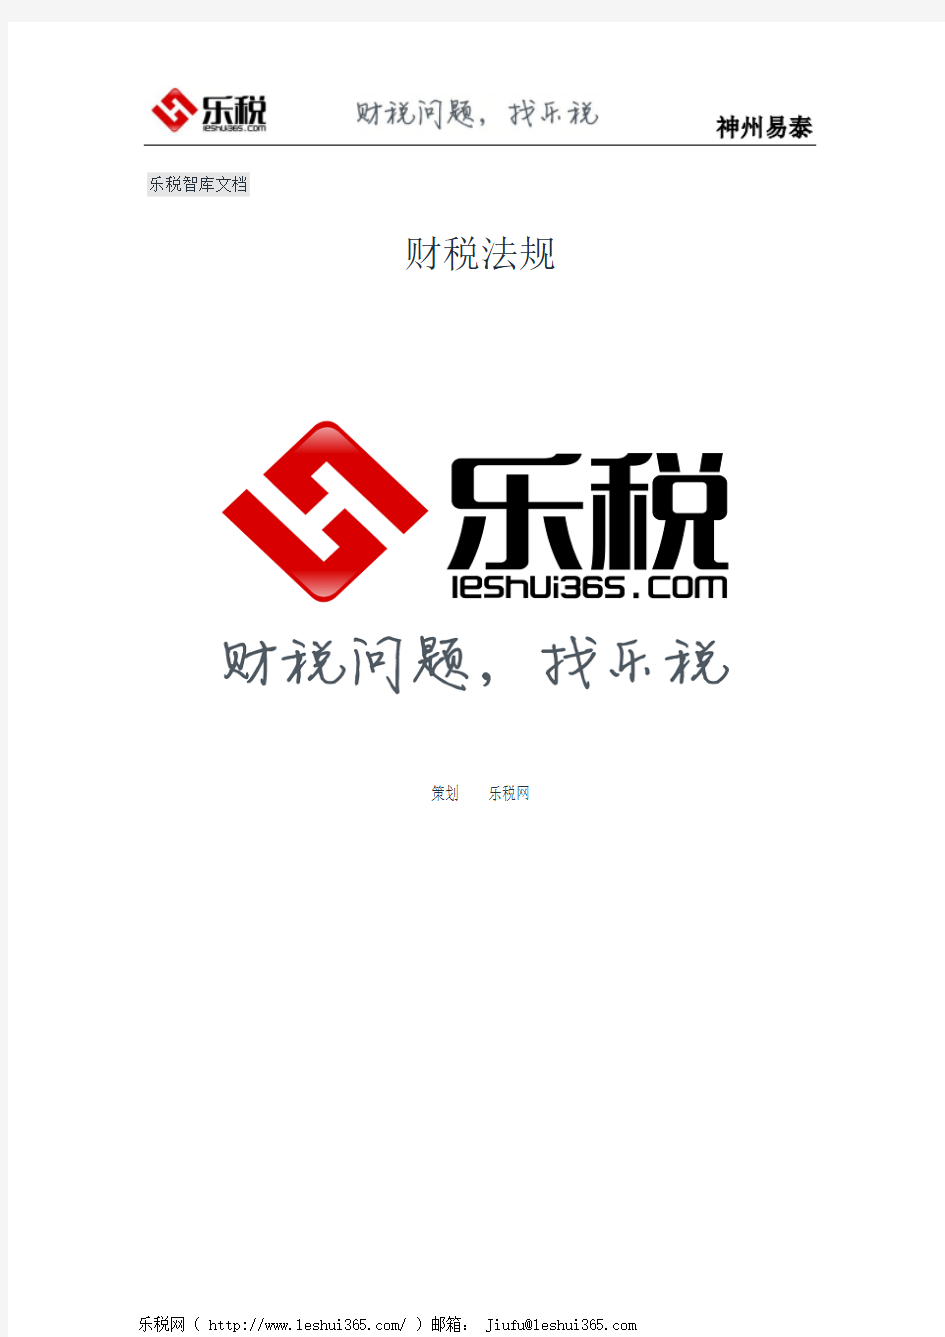 上海市国家税务局上海市地方税务局关于印发《本市汇总纳税总机构